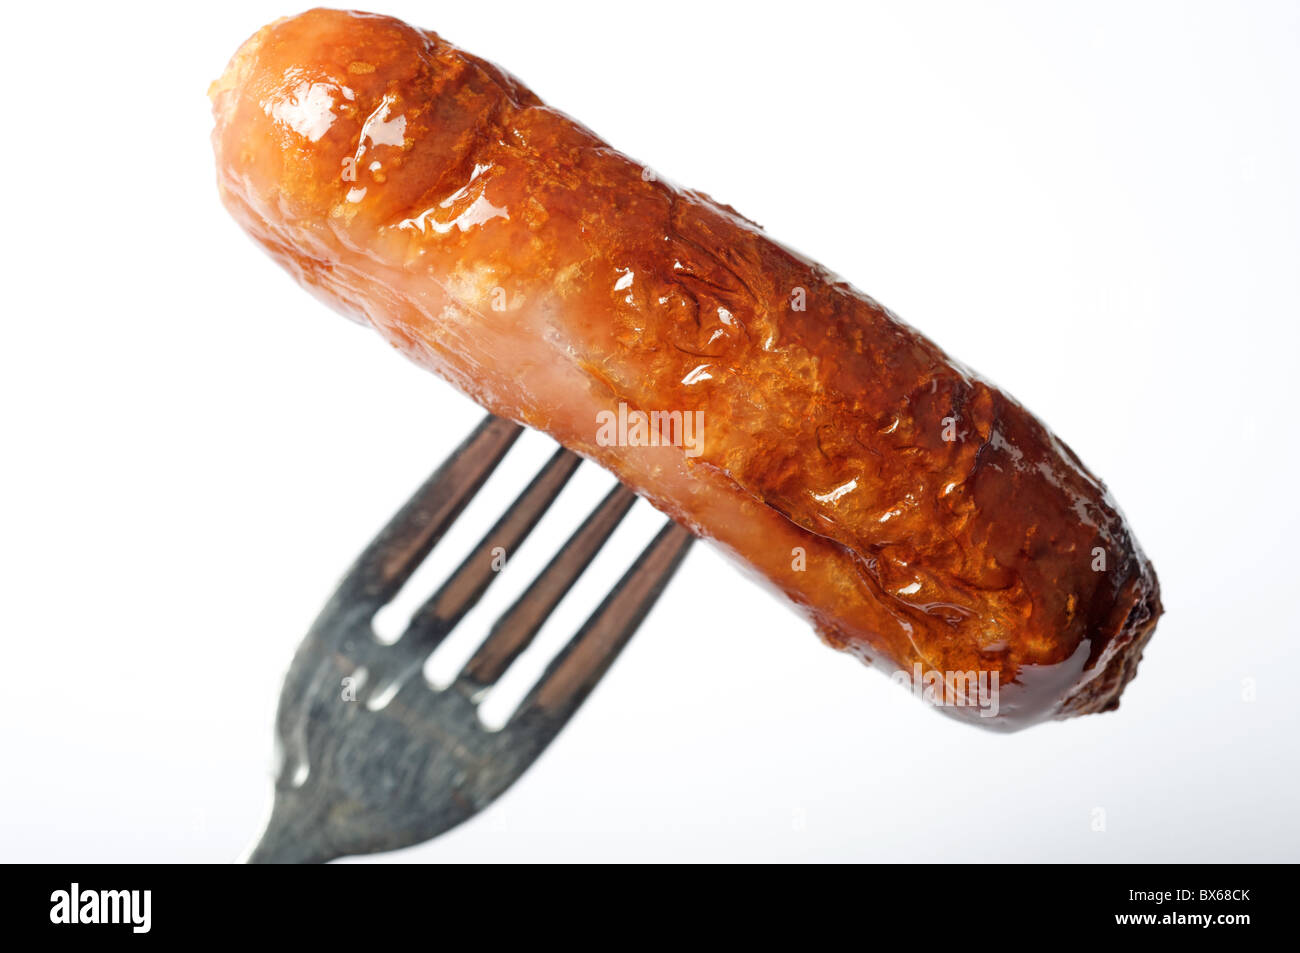 Pork sausage Stock Photo